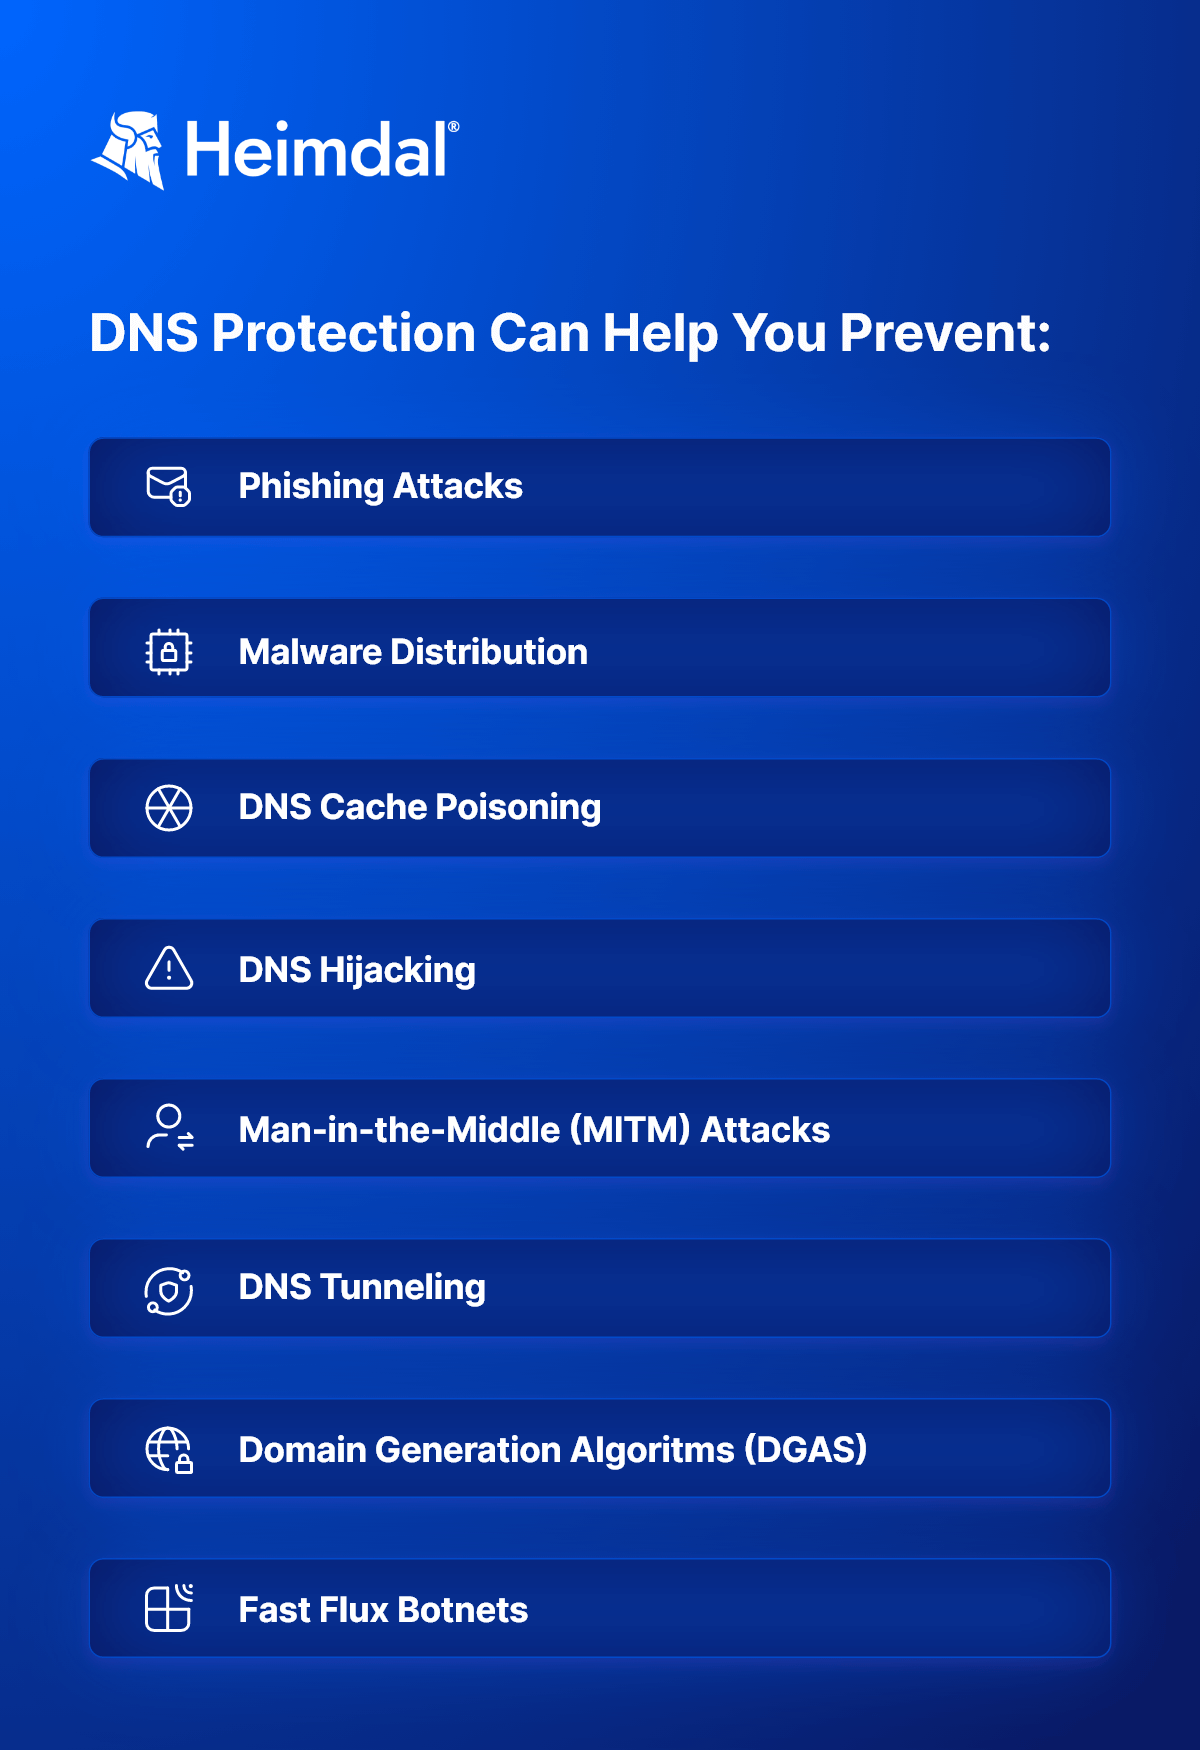 DNS Attacks blocked via DNS filtering